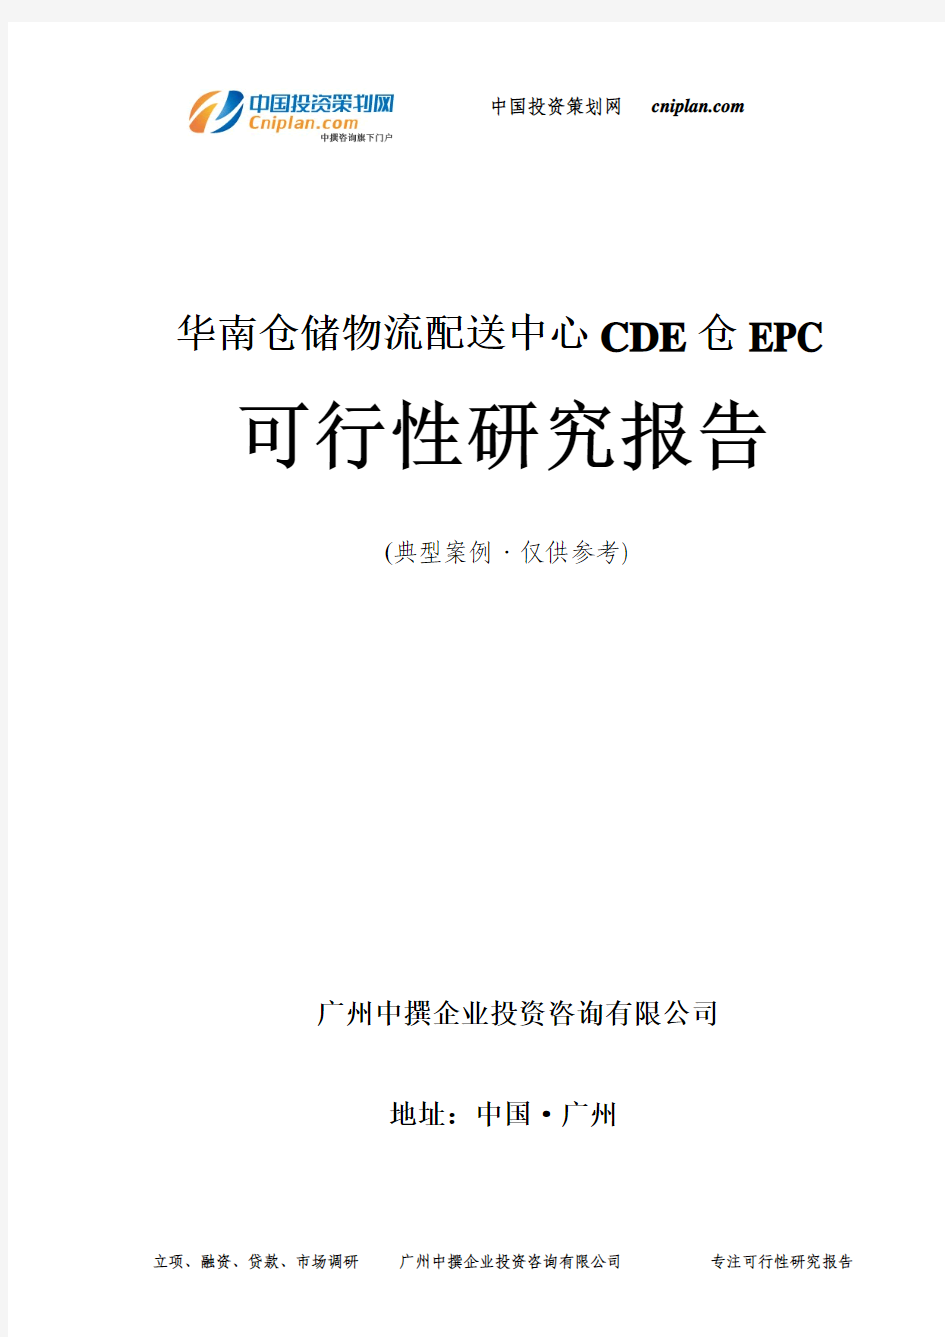 仓储物流配送中心CDE仓EPC可行性研究报告-广州中撰咨询